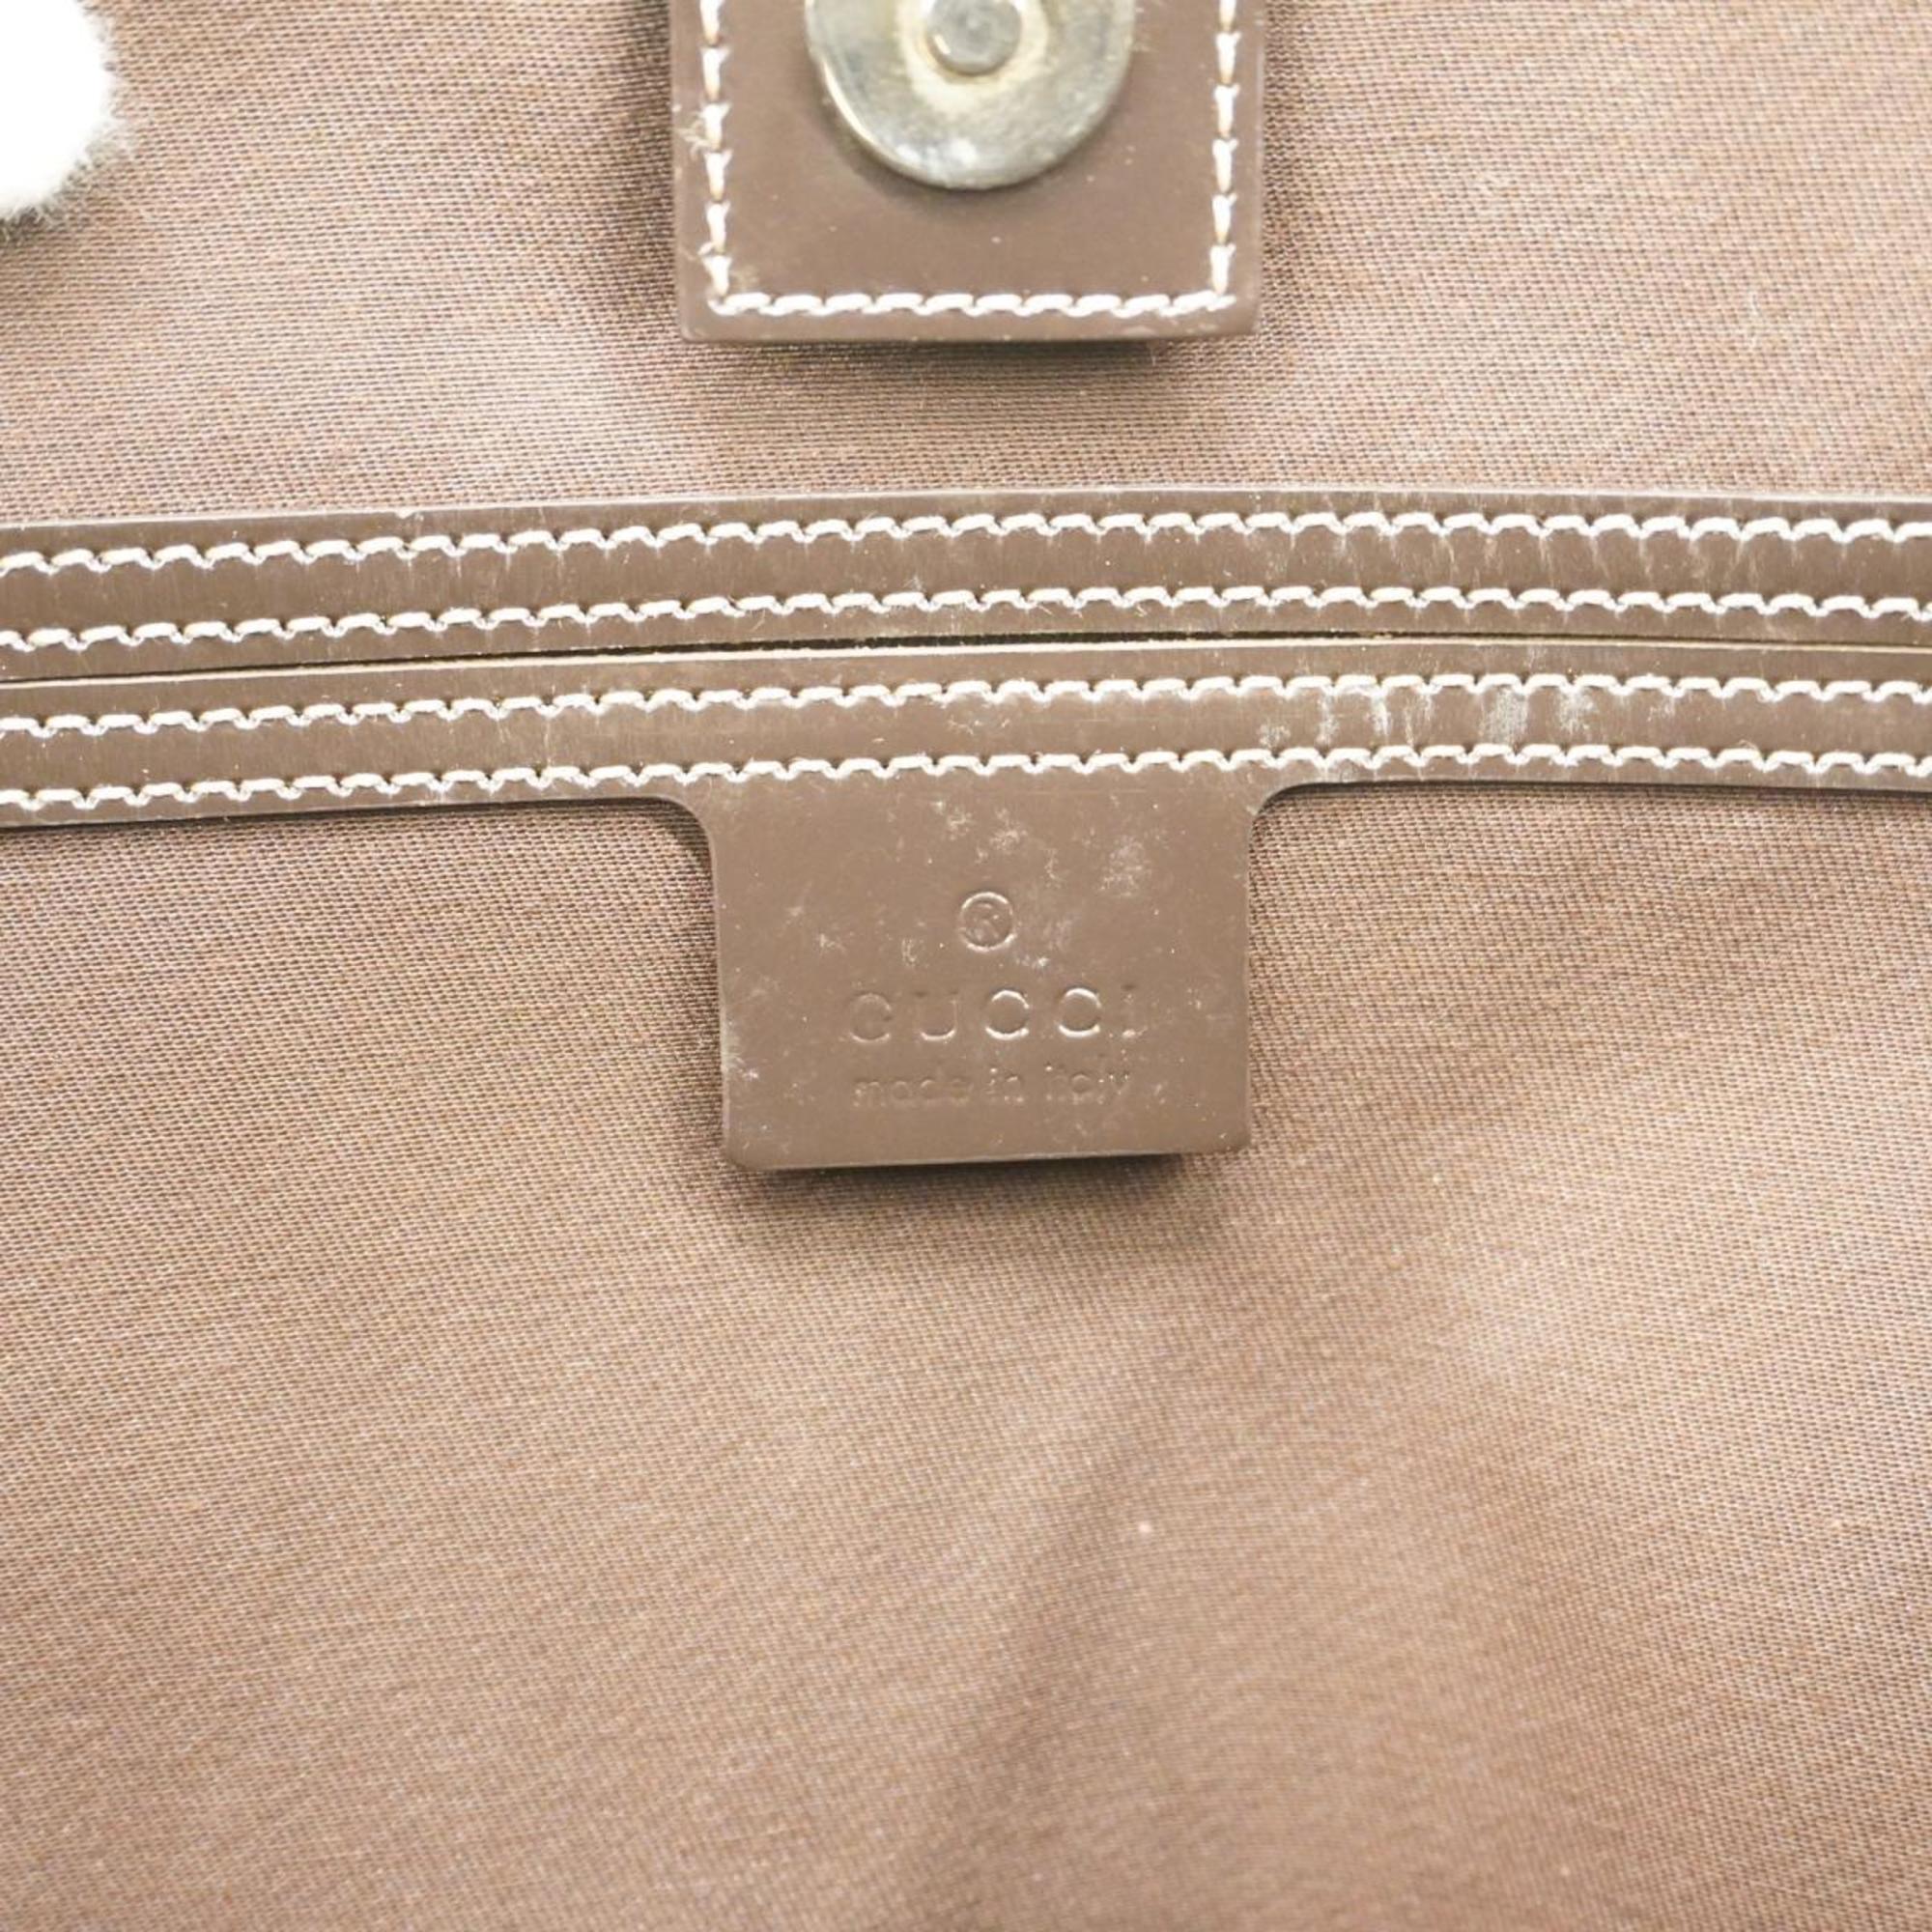 Gucci Tote Bag GG Supreme 197953 Leather Brown Beige Women's